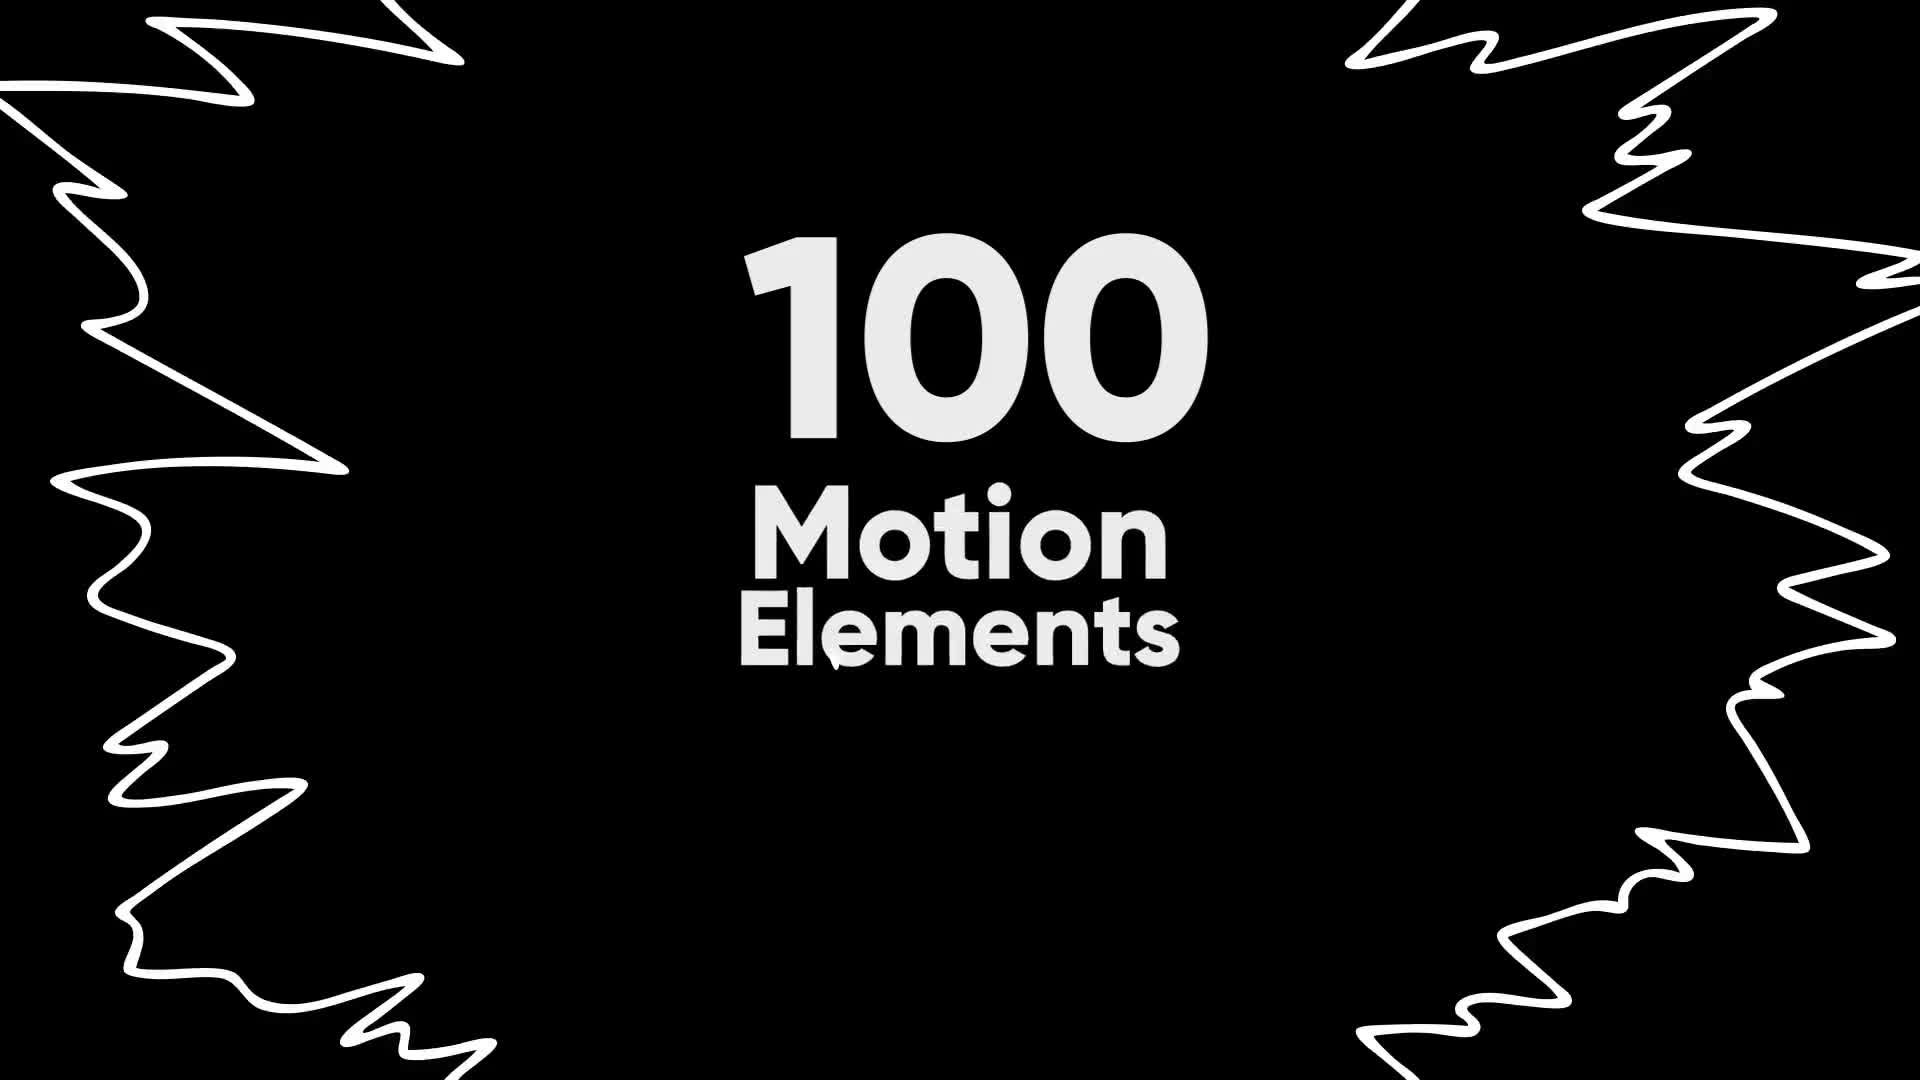 100 Motion Elements Premiere Videohive 23321552 Premiere Pro Image 1